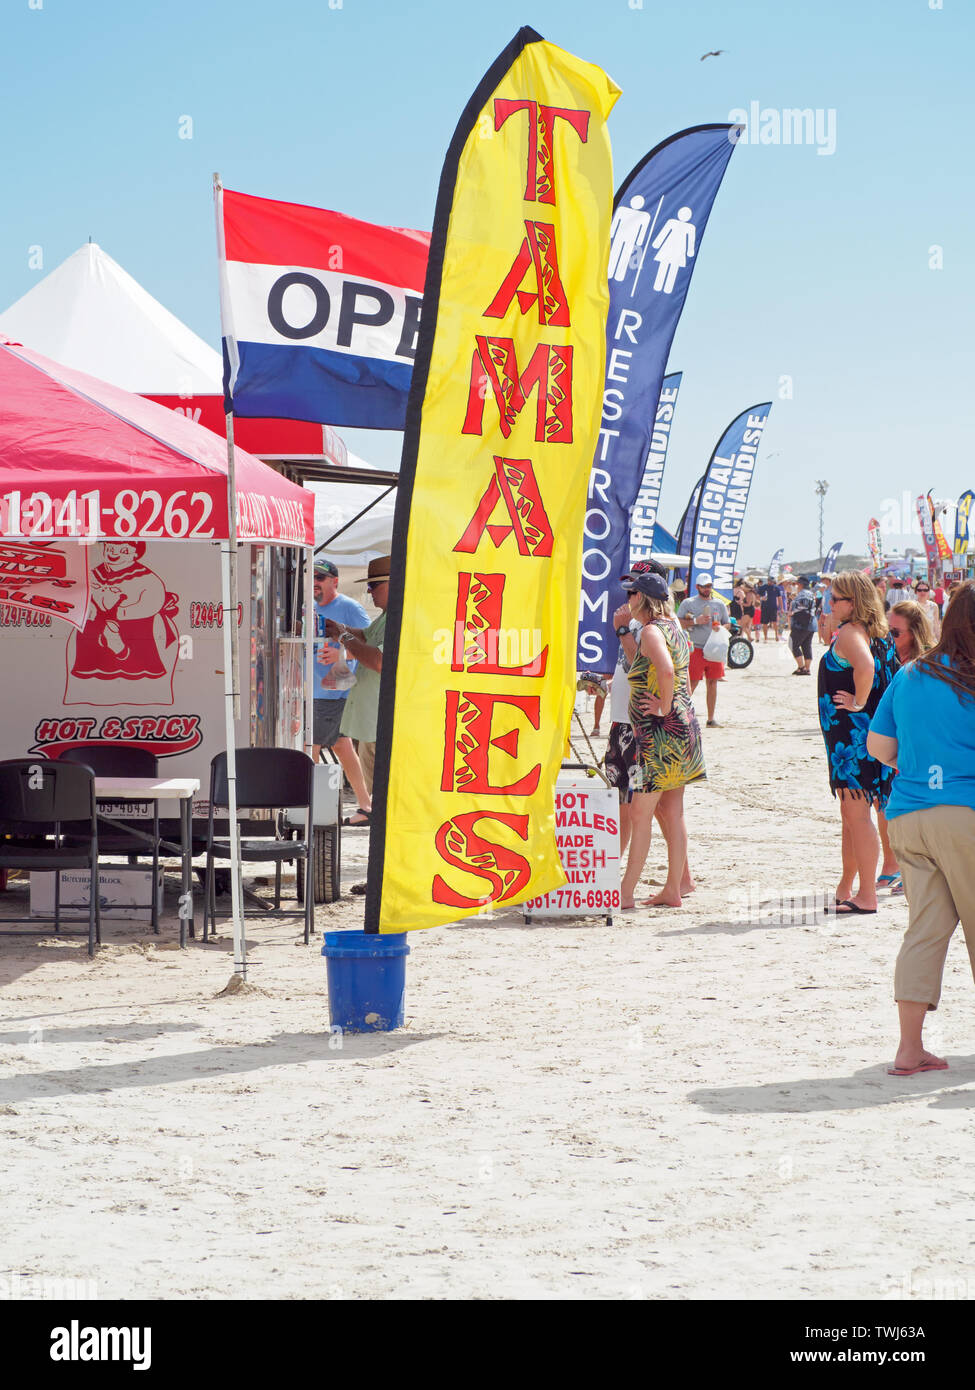 Tamales für Verkauf auf eine rote und eine gelbe Flagge am2019 Texas Sandfest in Port Aransas, Texas USA beworben. Hochformat. Stockfoto